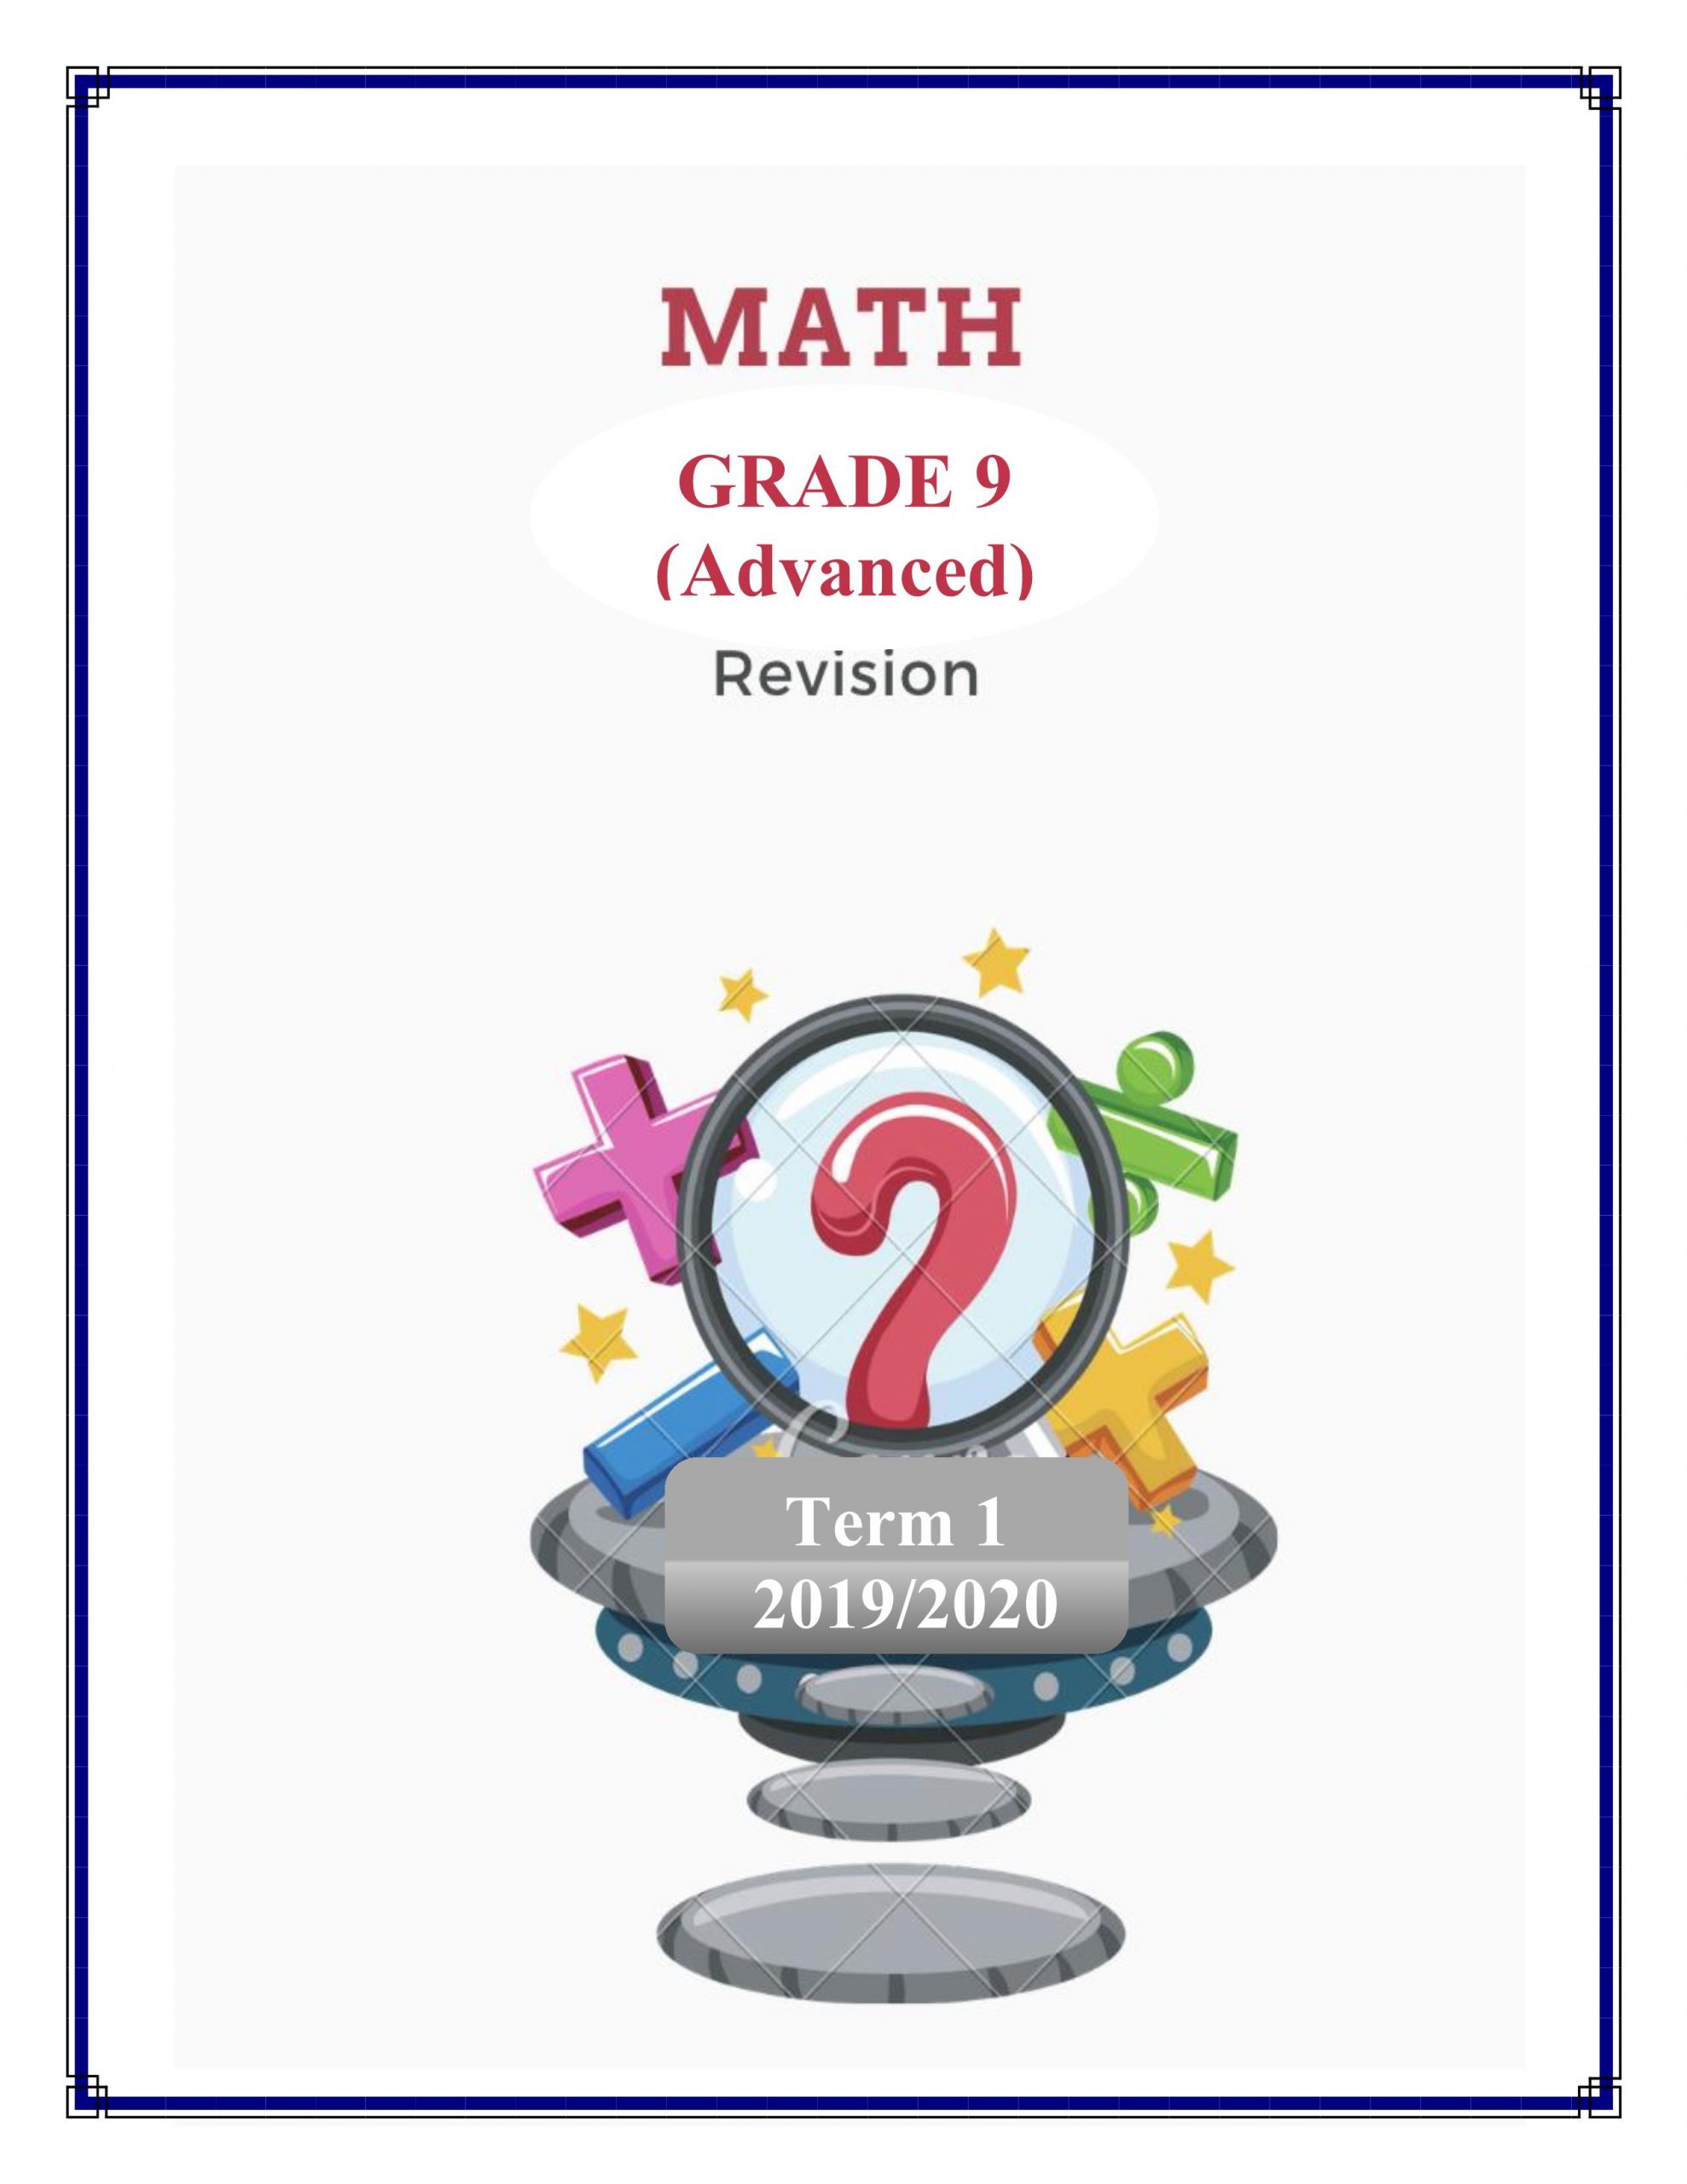 اوراق عمل مراجعة بالانجليزي الصف التاسع متقدم مادة الرياضيات المتكاملة